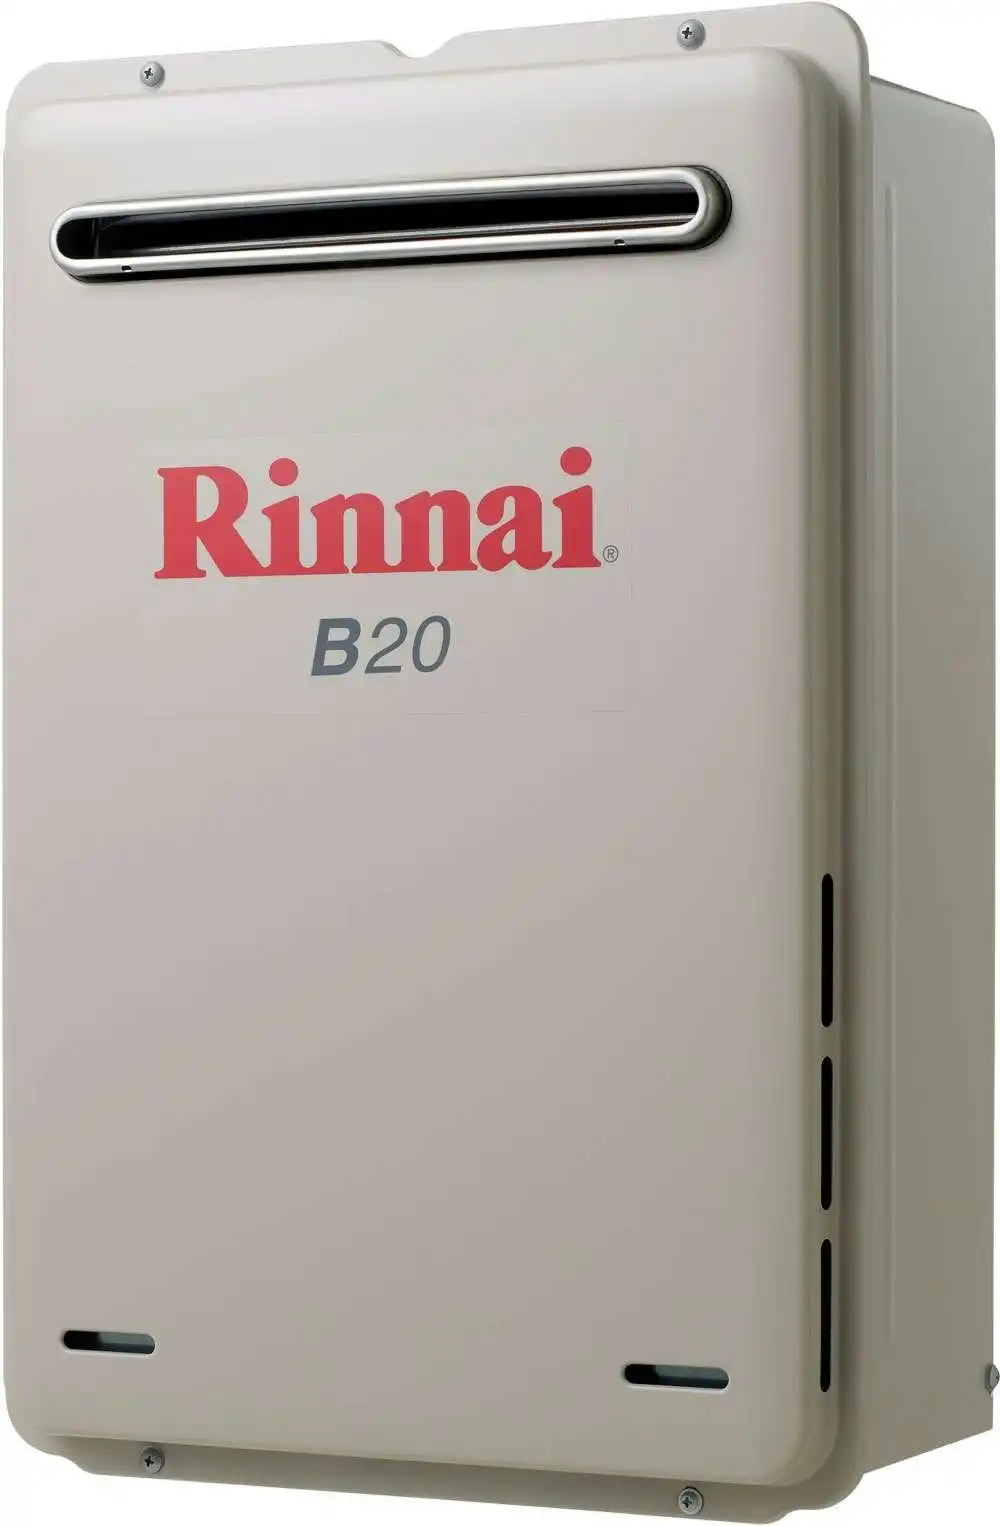 Rinnai Builders 60oC 20L Instant Hot Water System B20L60A B20 *LPG GAS*